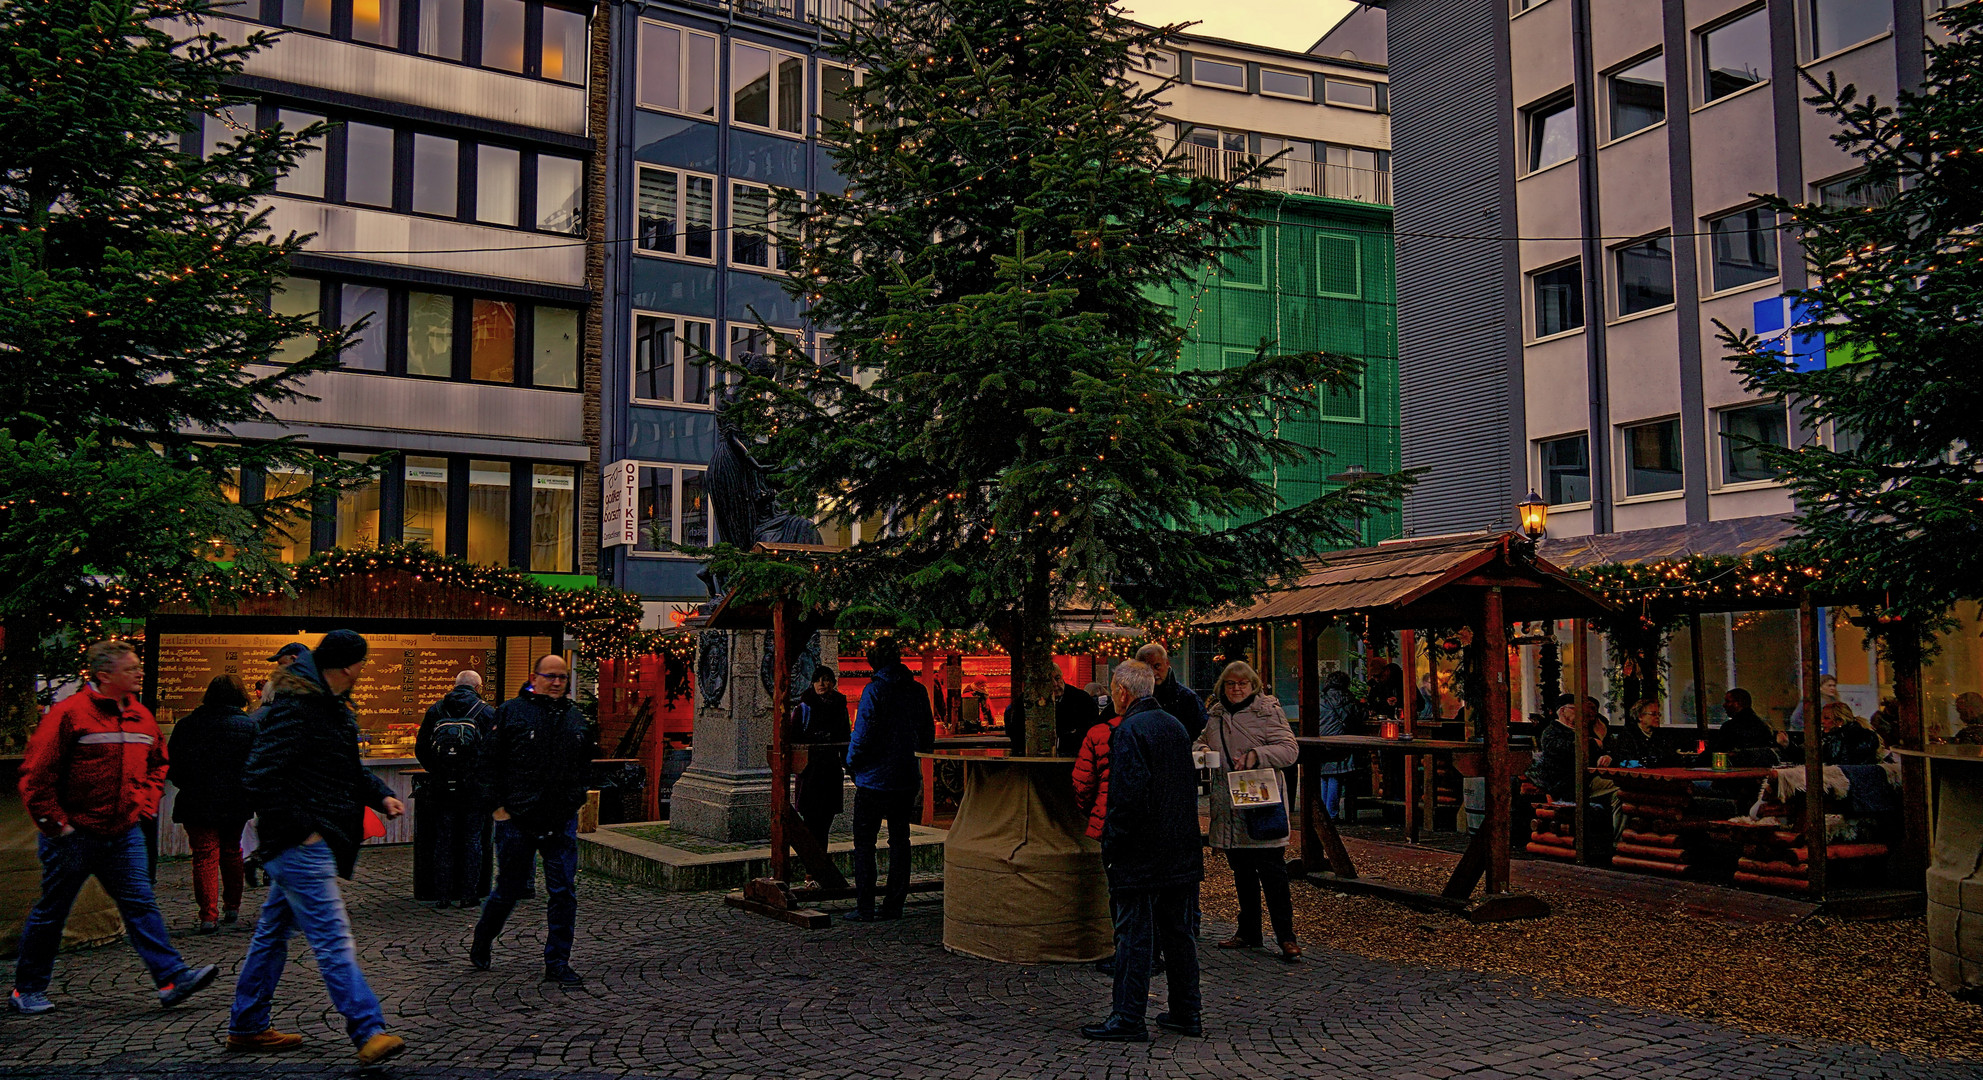 Weihnachtsmarkt - Wuppertal Elberfeld